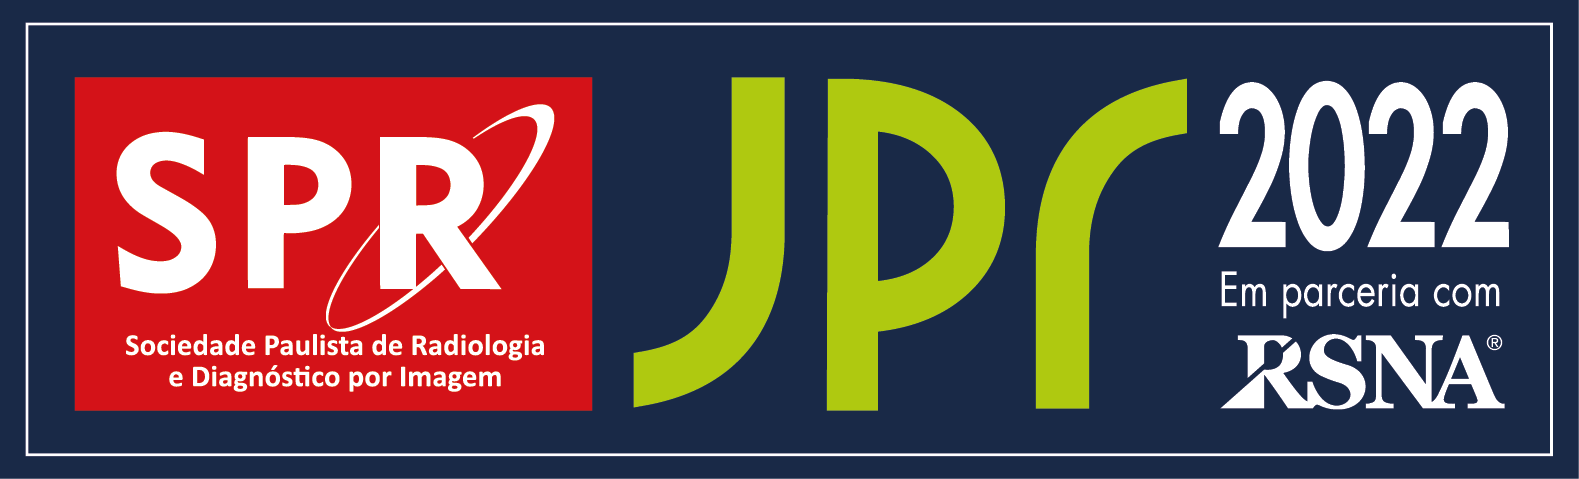 Videoteca: membros ativos têm acesso à JPR 2022 até o dia 30/09